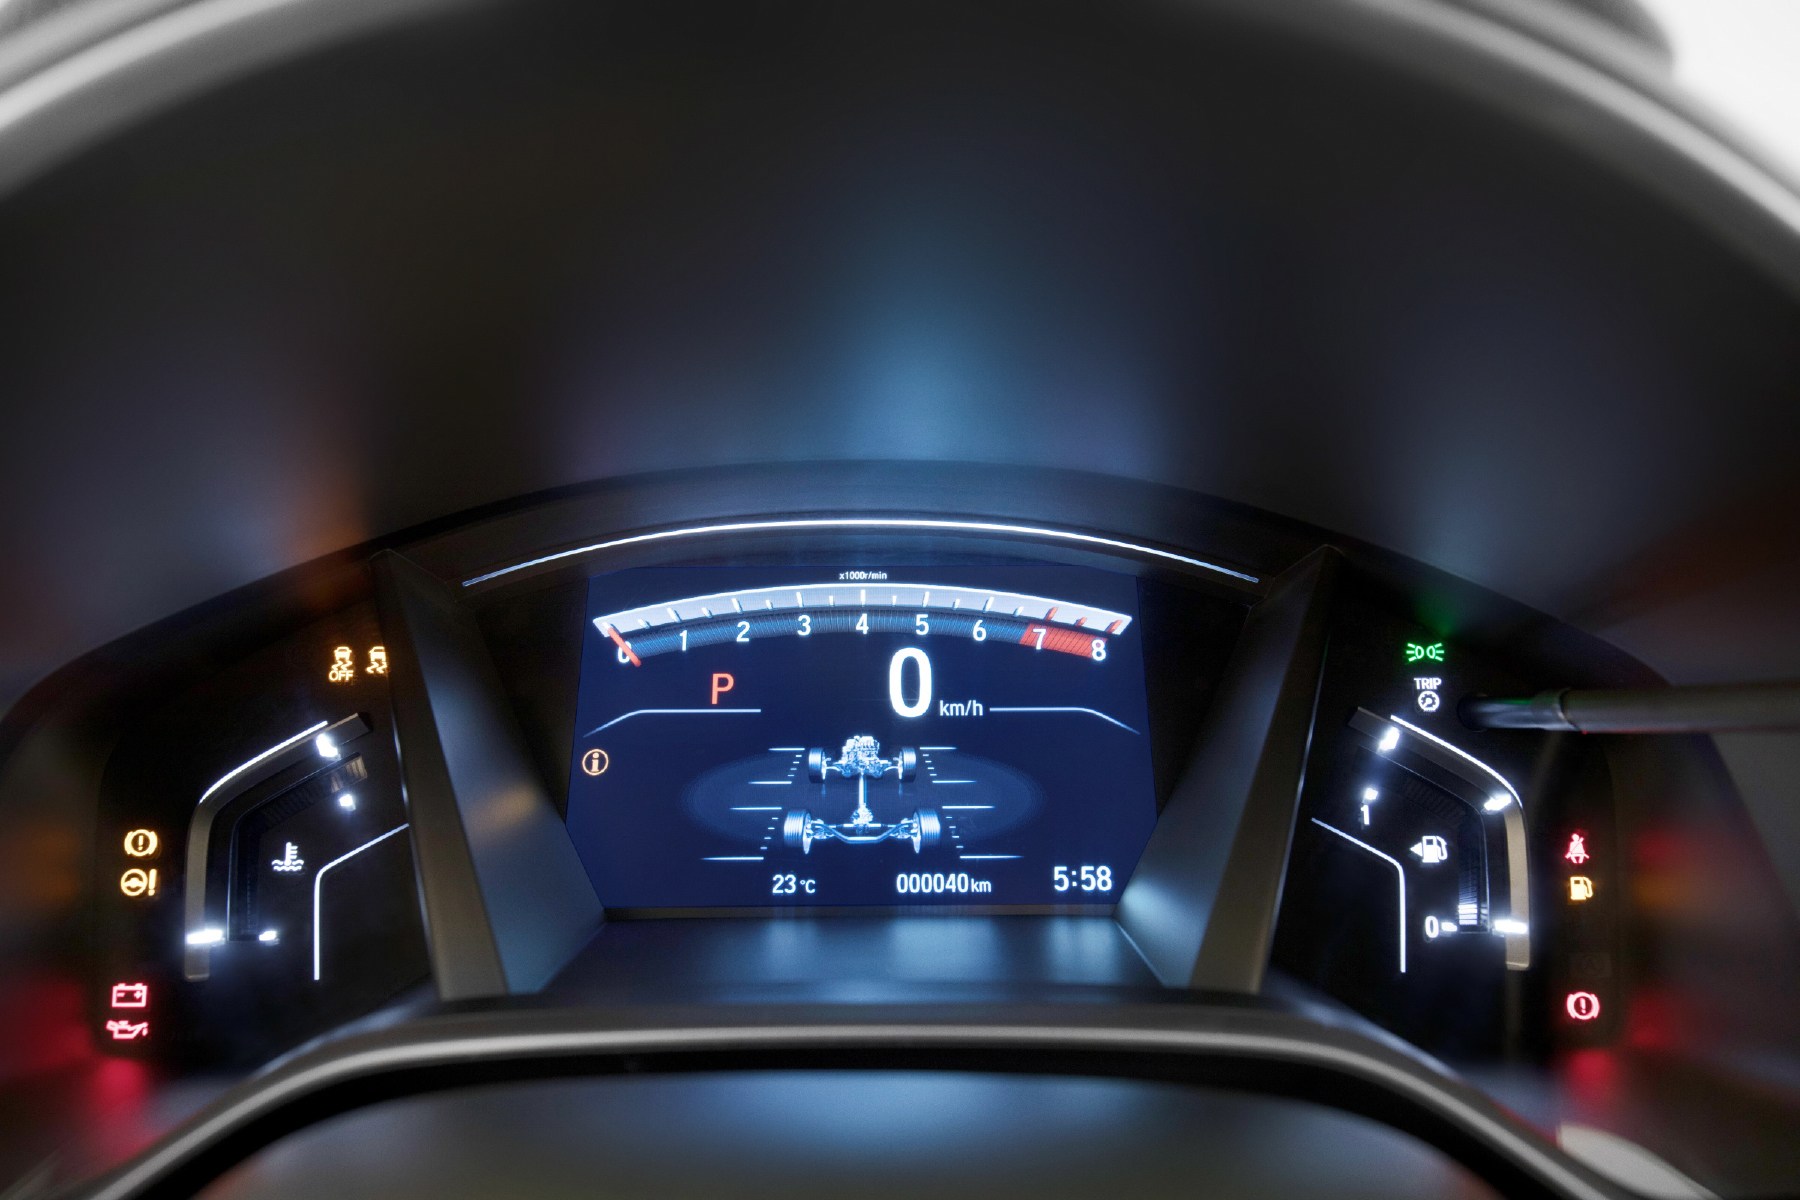 Honda v панель. Приборная панель Honda CRV 2020. Honda CRV 2017 приборная панель. Цифровая приборная панель Honda CRV 5. Цифровая панель Honda CR V.